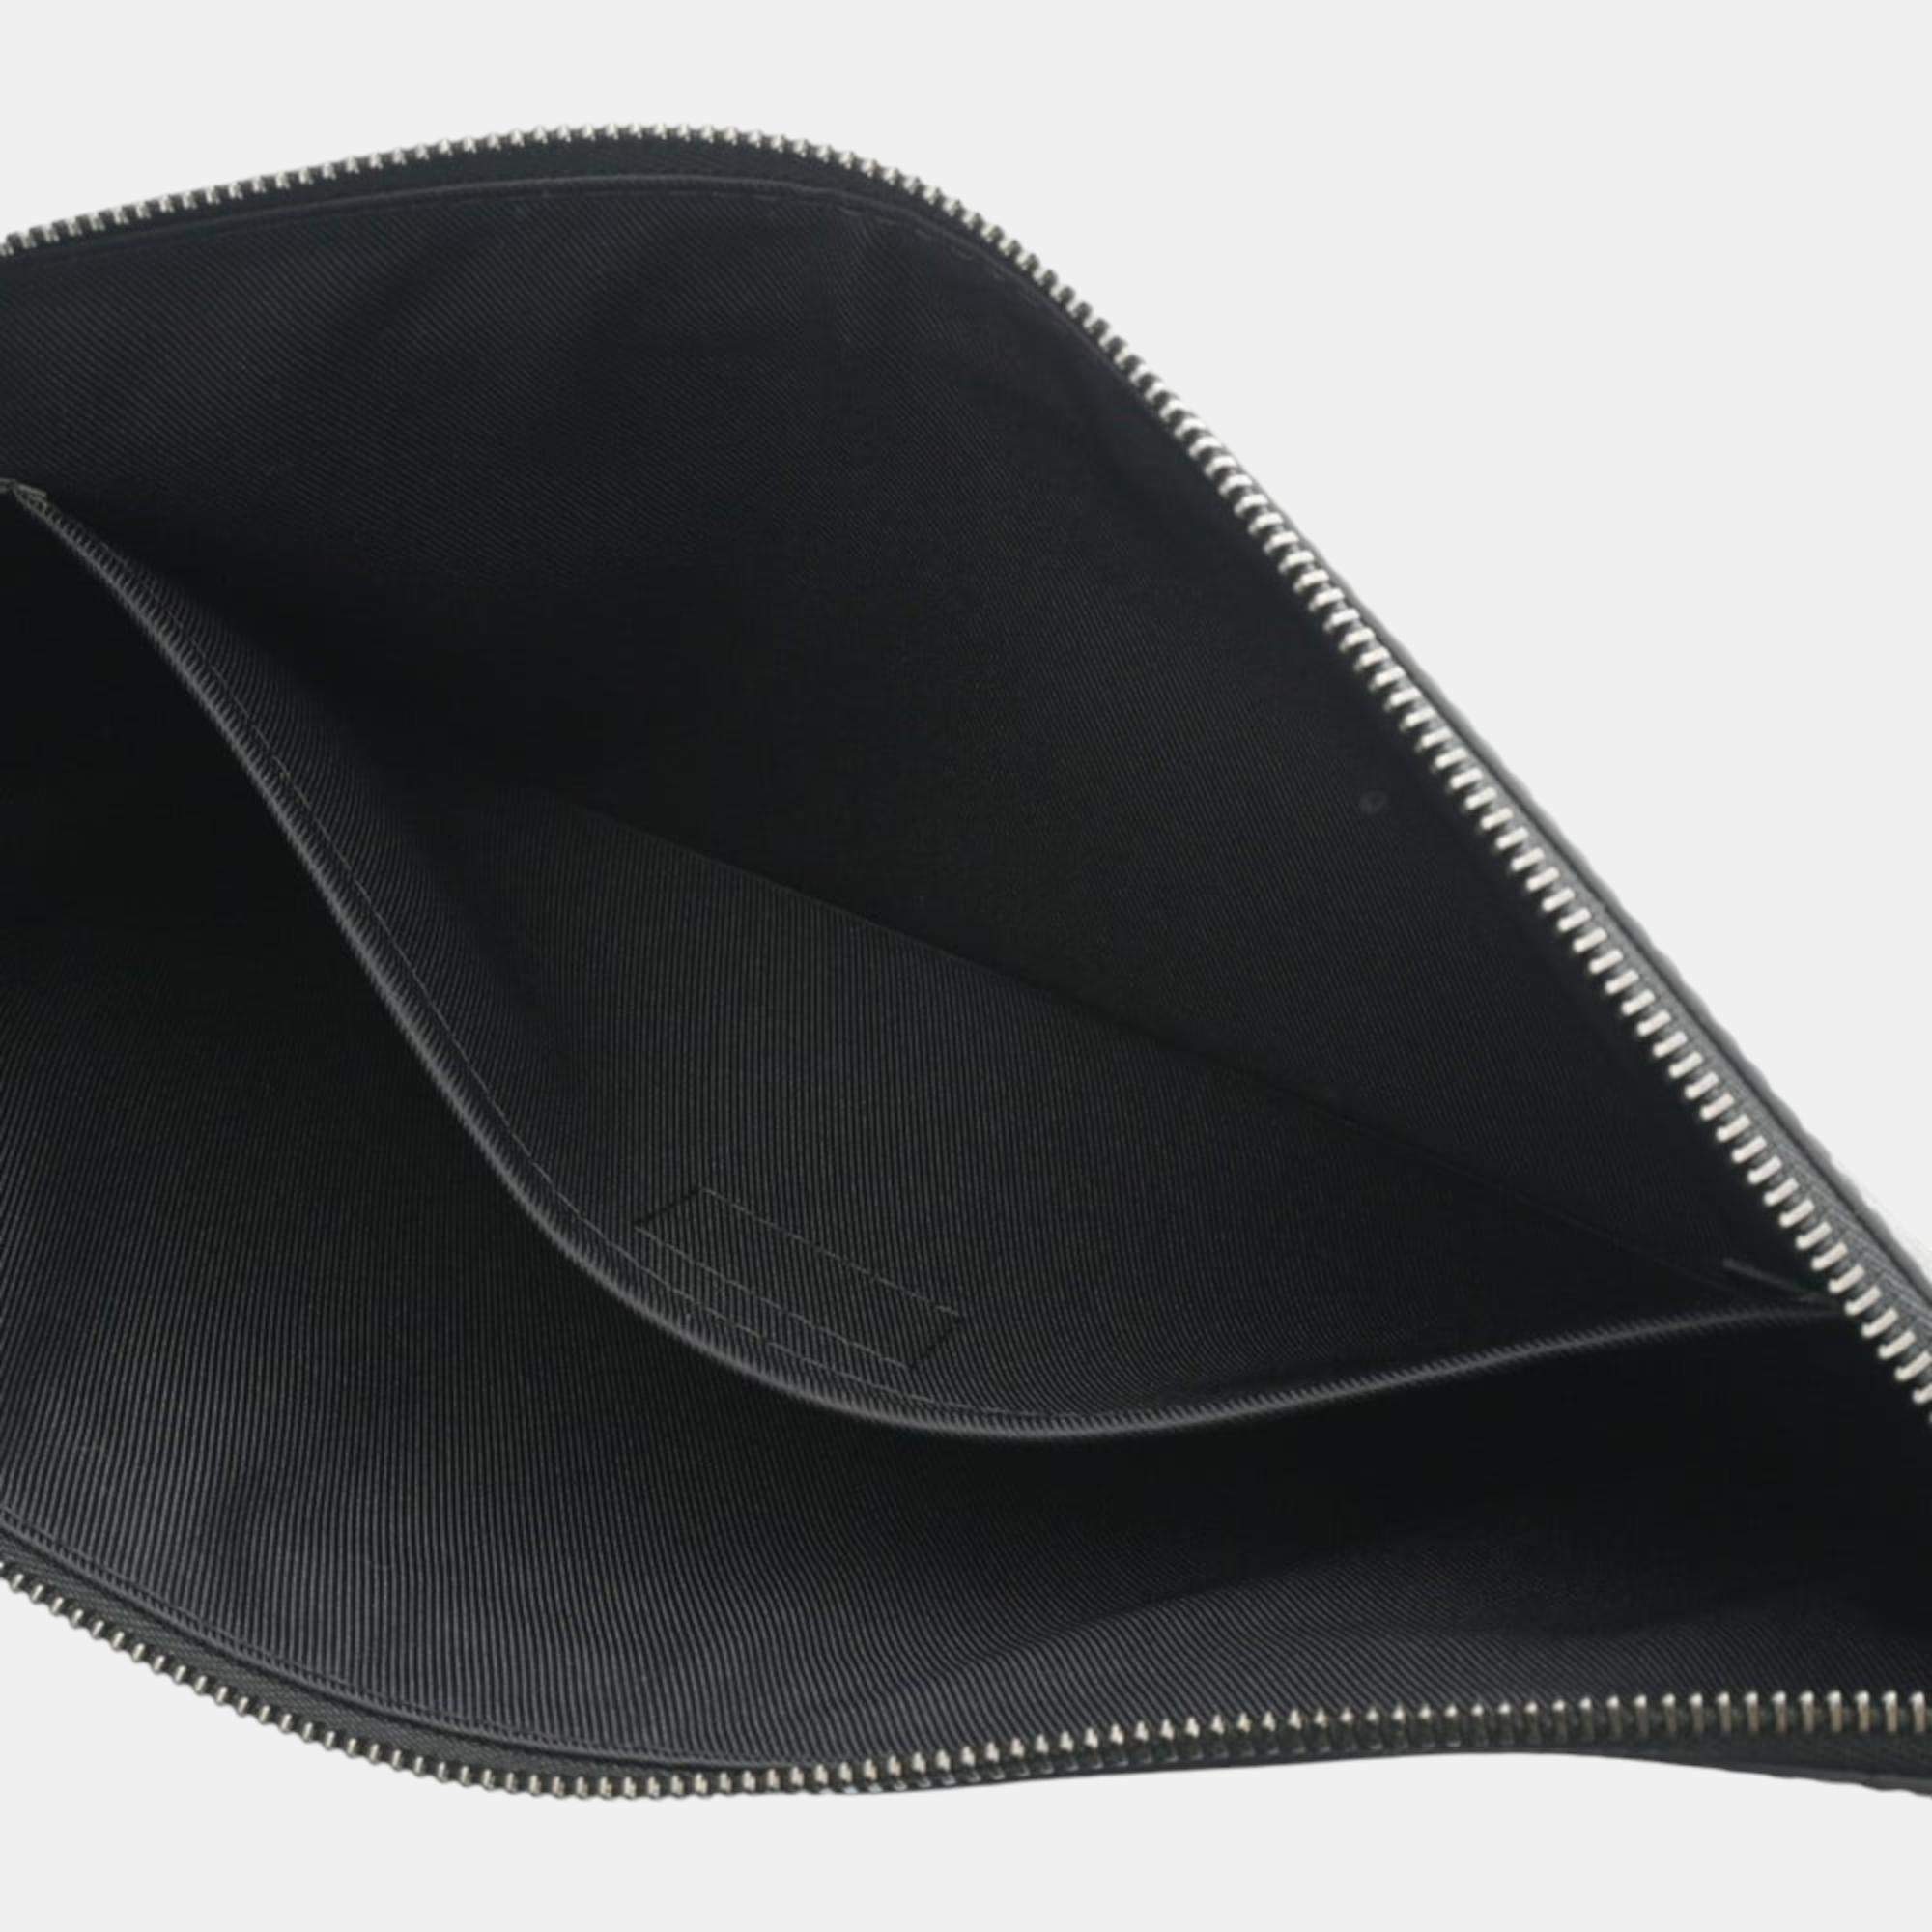 Louis Vuitton Pouch Pochette Discovery Black Monogram Eclipse M44323  Leather SP1189 LOUIS VUITTON D Ring Men's Clutch Bag Wallet | eLADY  Globazone